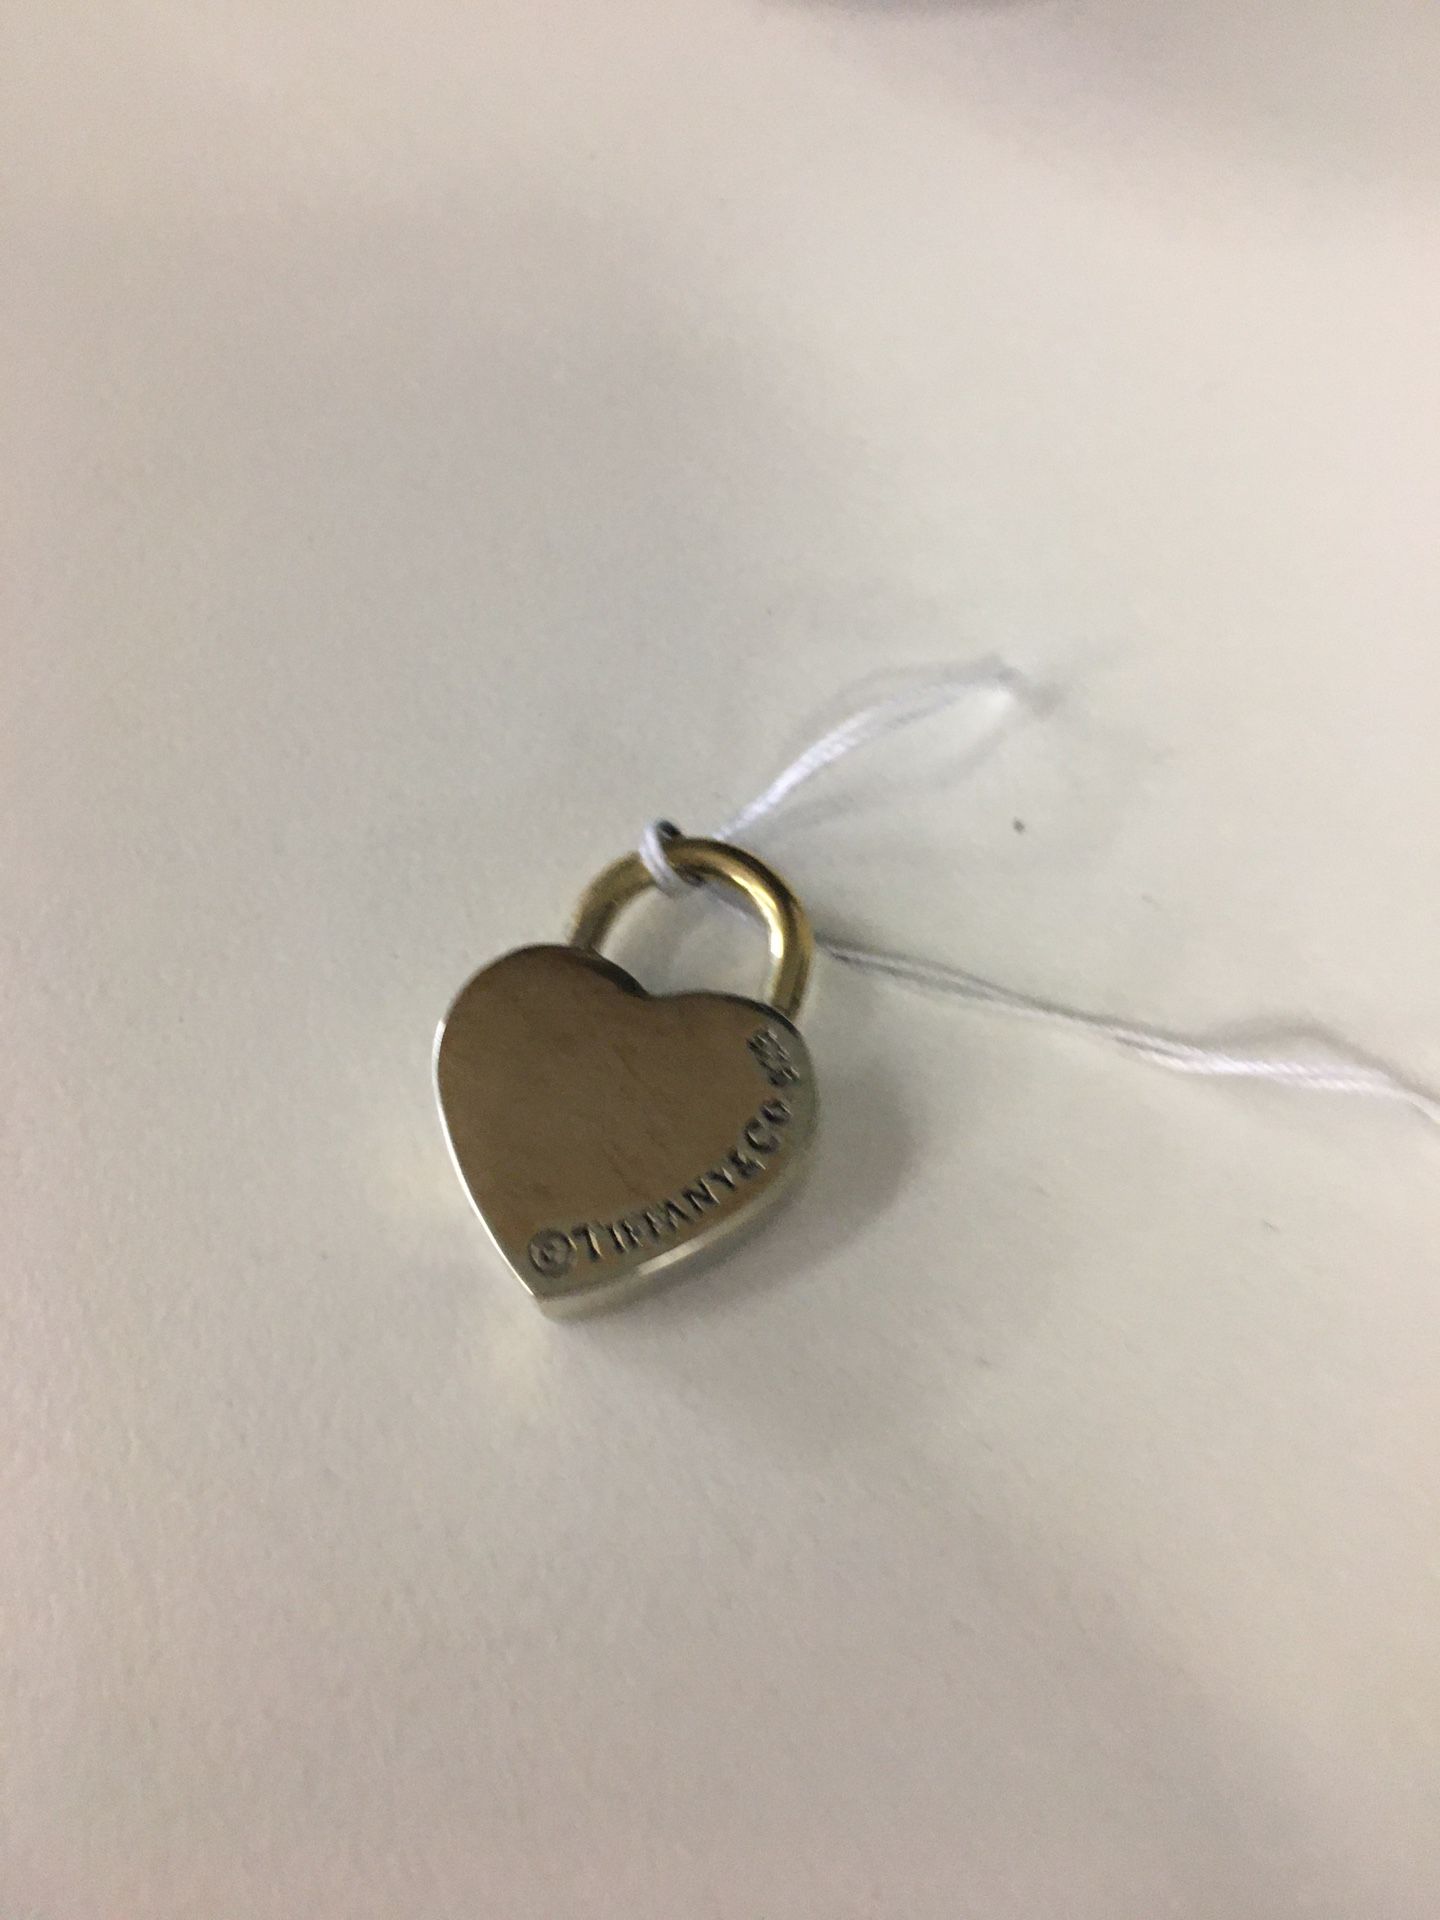 Tiffany & co silver heart lock